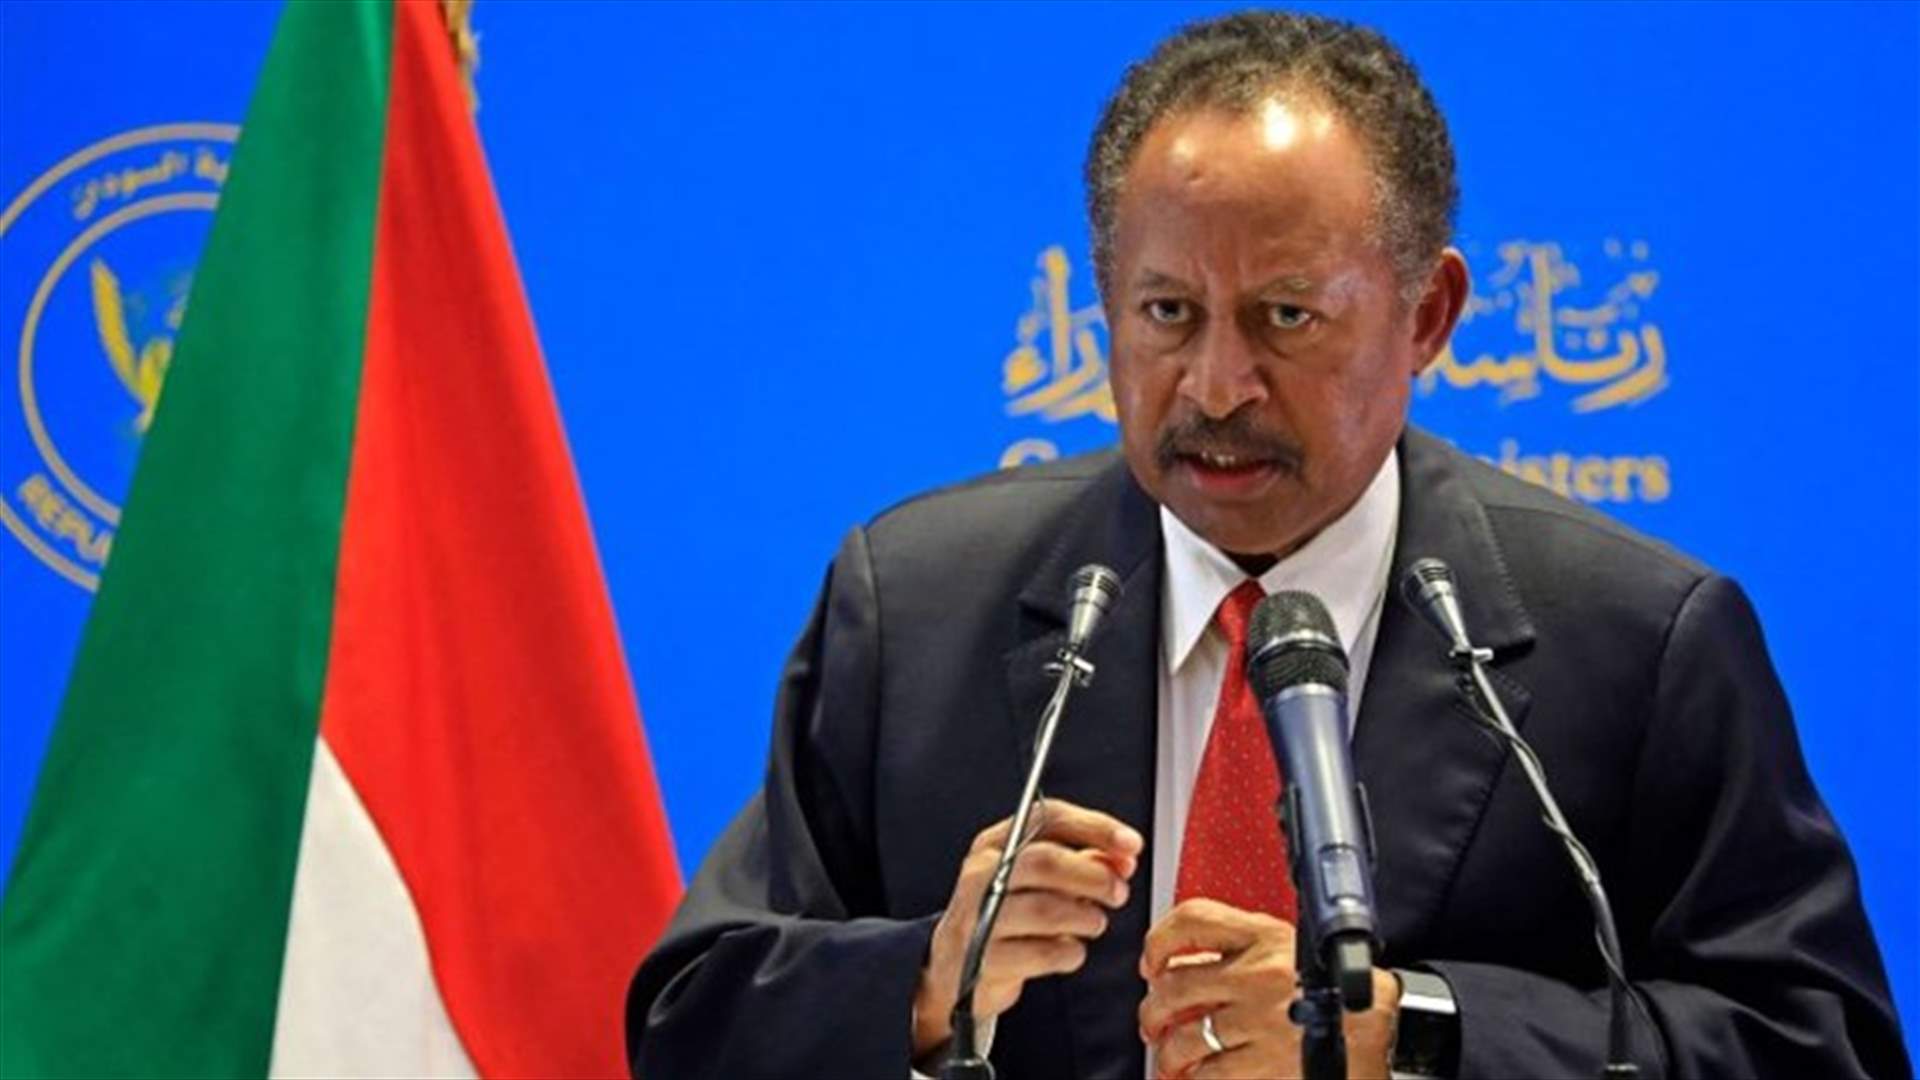 حمدوك يؤكد على الالتزام بالتحول الديمقراطي في السودان